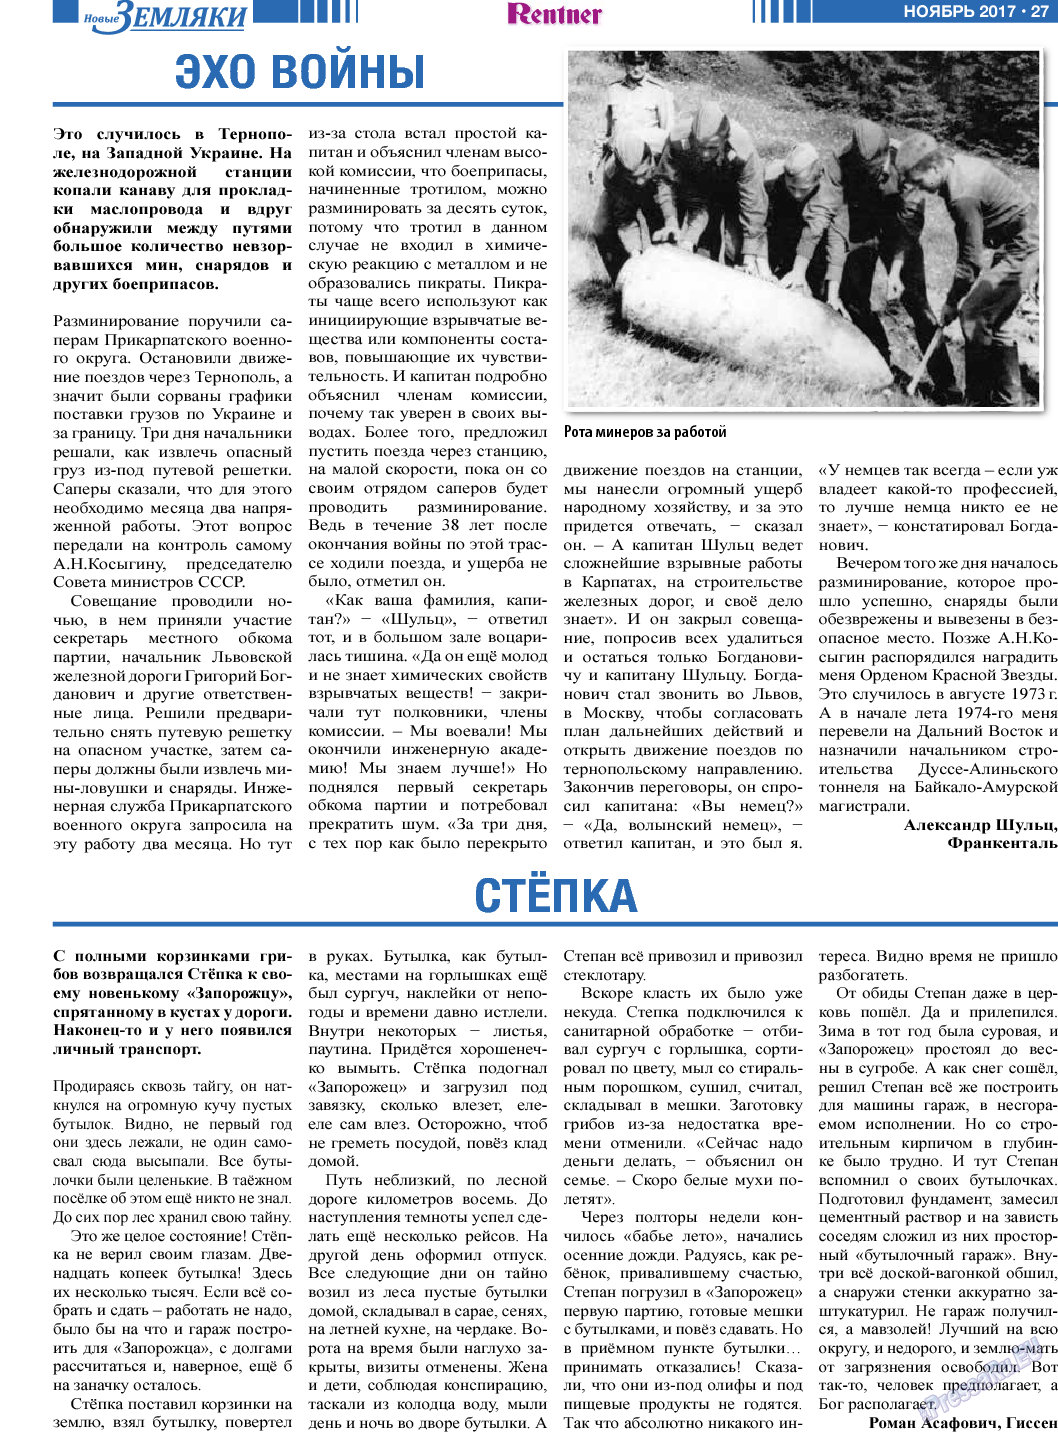 Новые Земляки (газета). 2017 год, номер 11, стр. 27